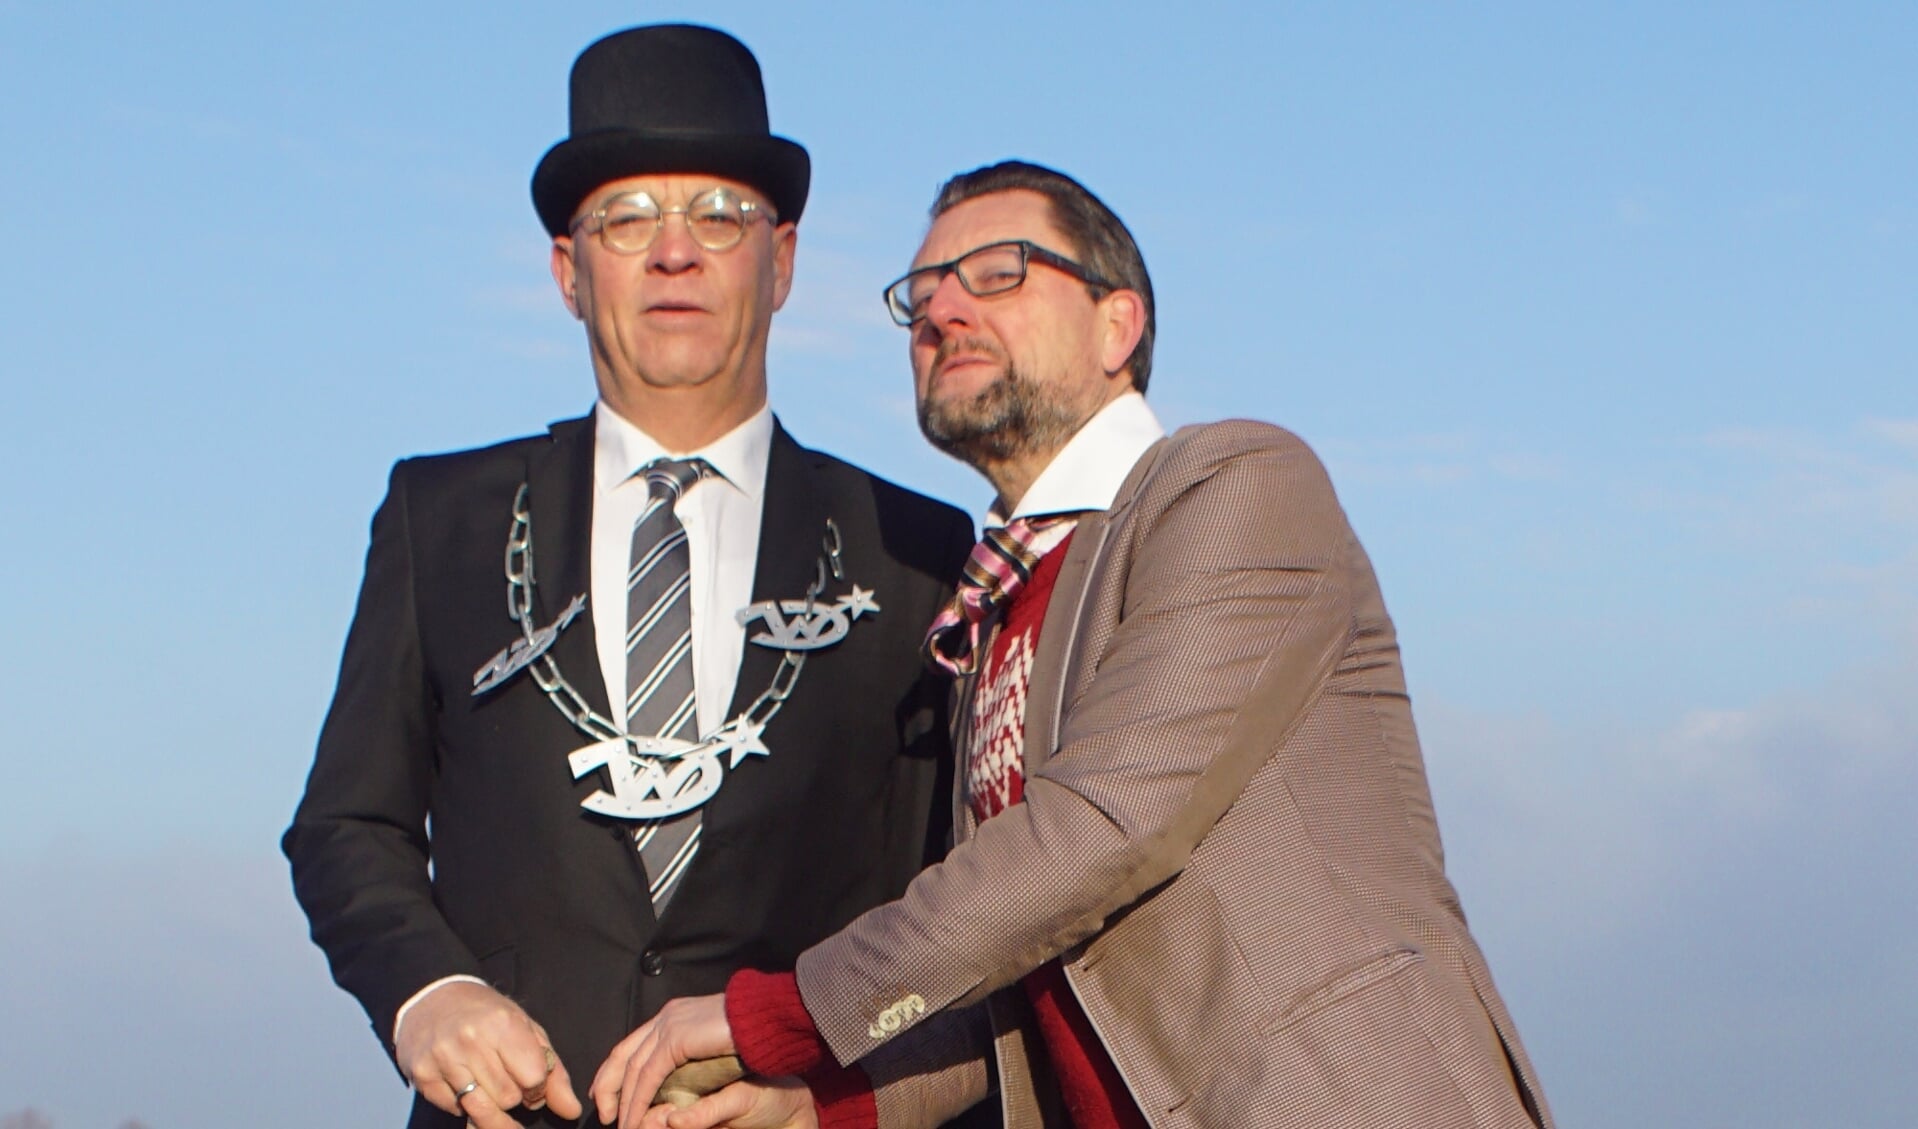 Burgemeester JPH Waarddijk en wethouder Hugo Kool van de gemeente Dijk en Waard spelen een belangrijke rol in de KanaalParkParade.